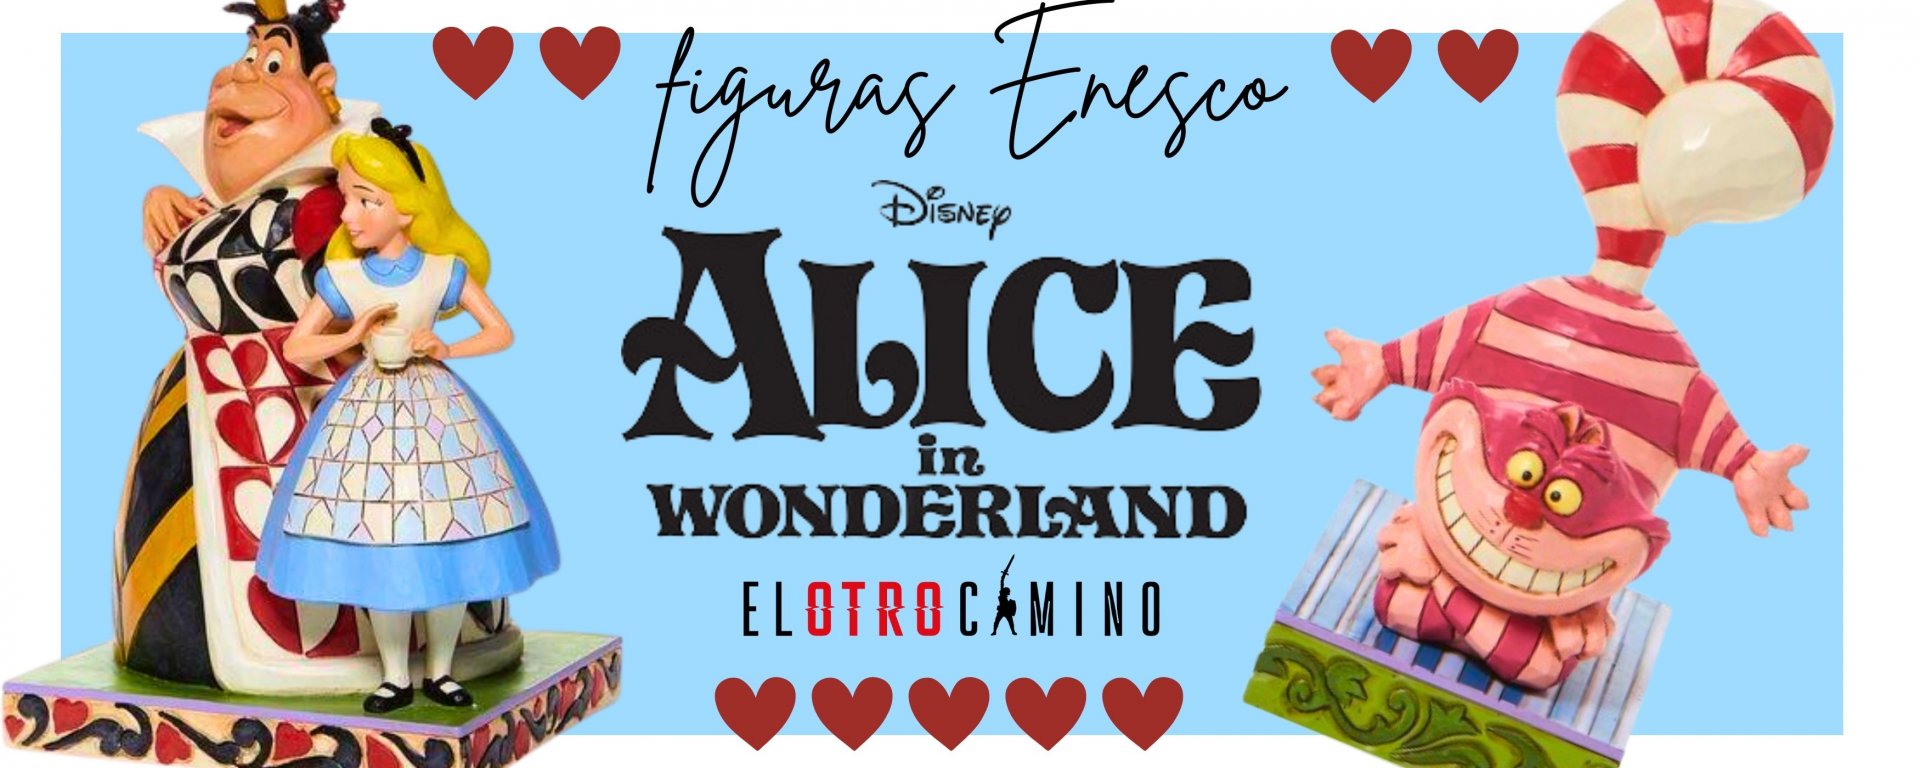 Figuras Alicia Enesco Disney.jpg